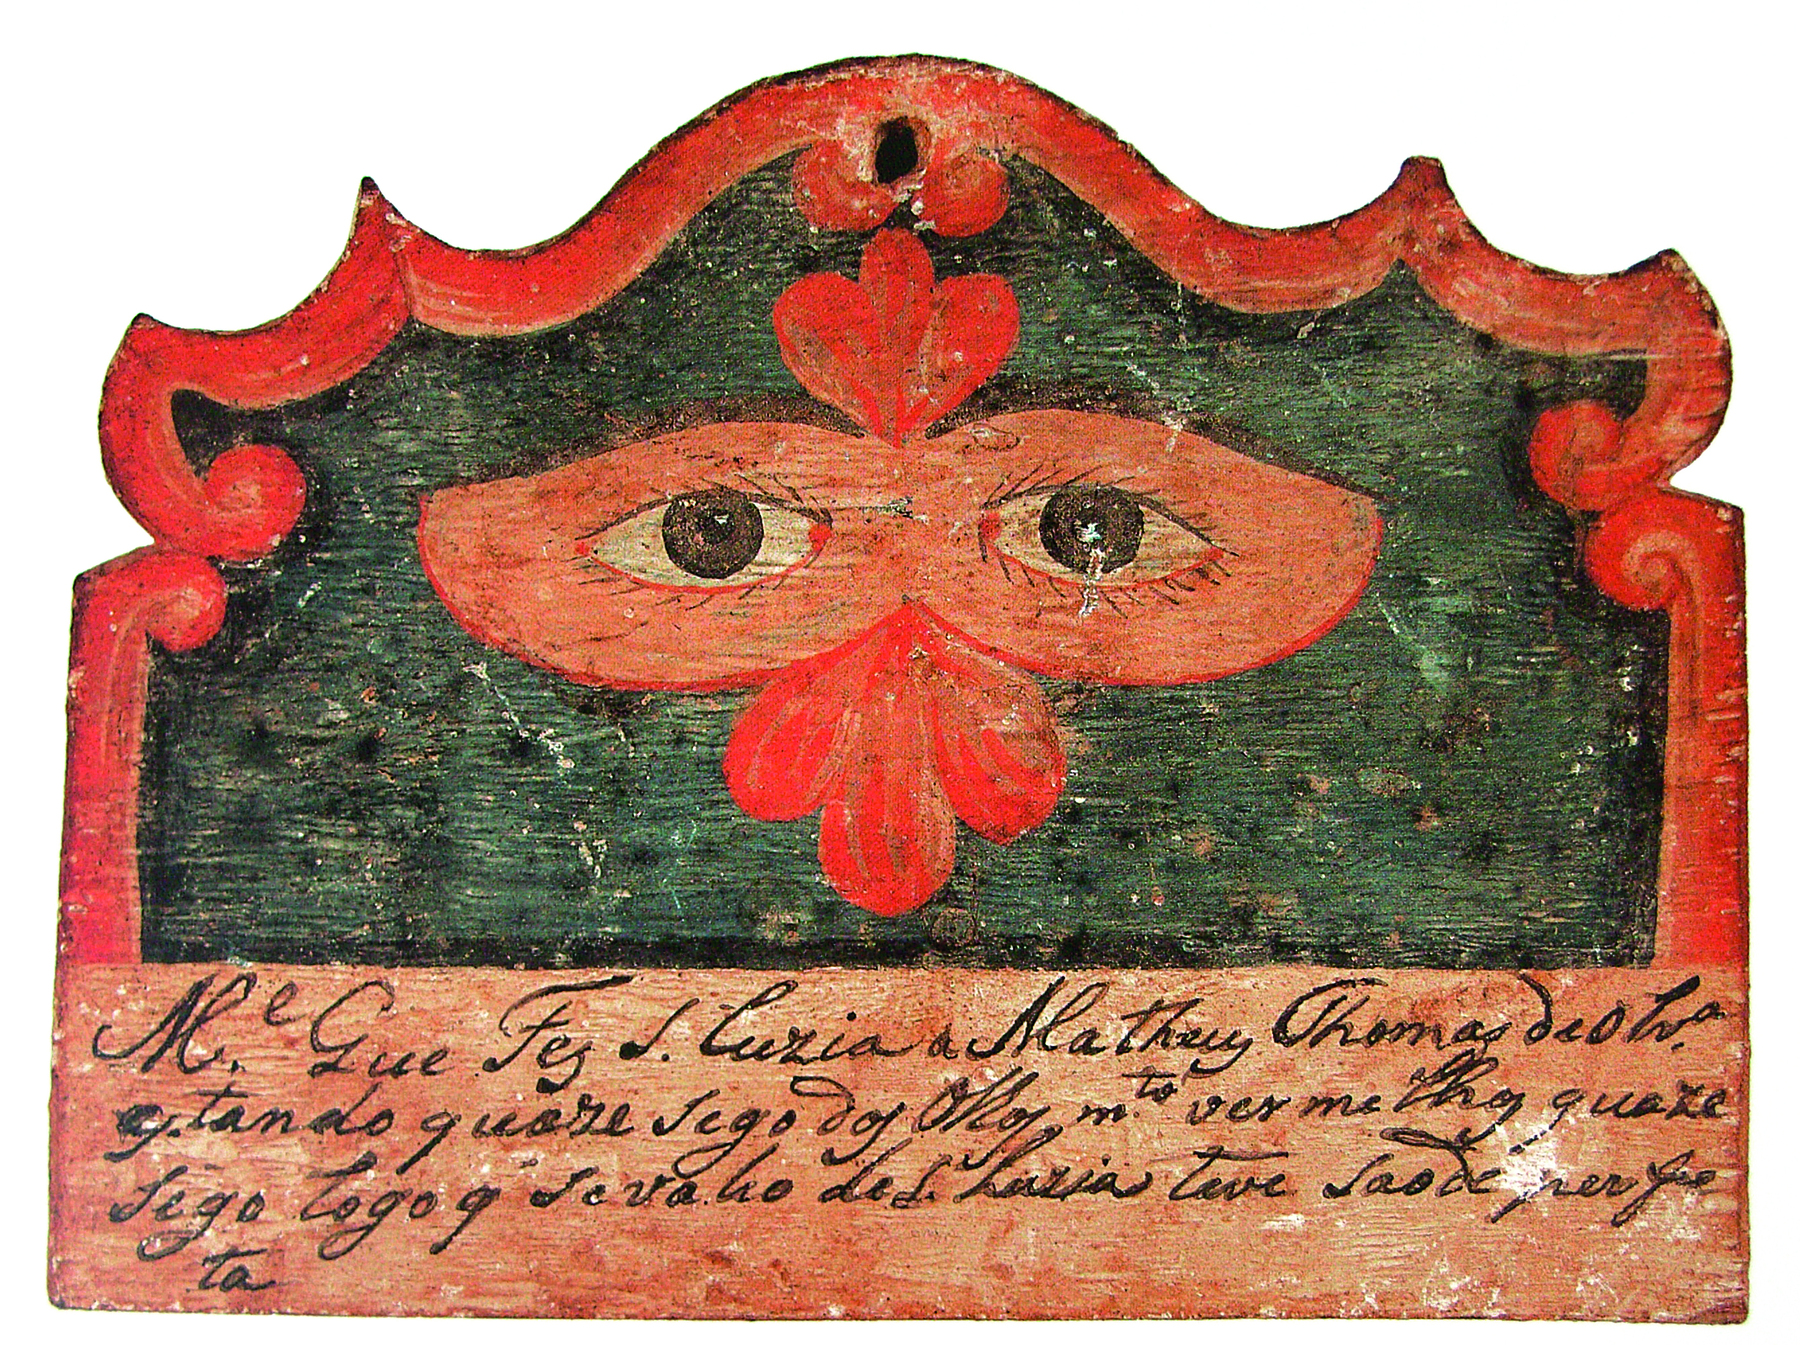 Fotografia. Escultura de madeira nas cores vermelho e preta. Na parte superior, ao centro, desenho de olhos castanhos, envoltos em um desenho em formato de máscara de olhos vermelha. Na parte inferior, texto escrito em letra cursiva.